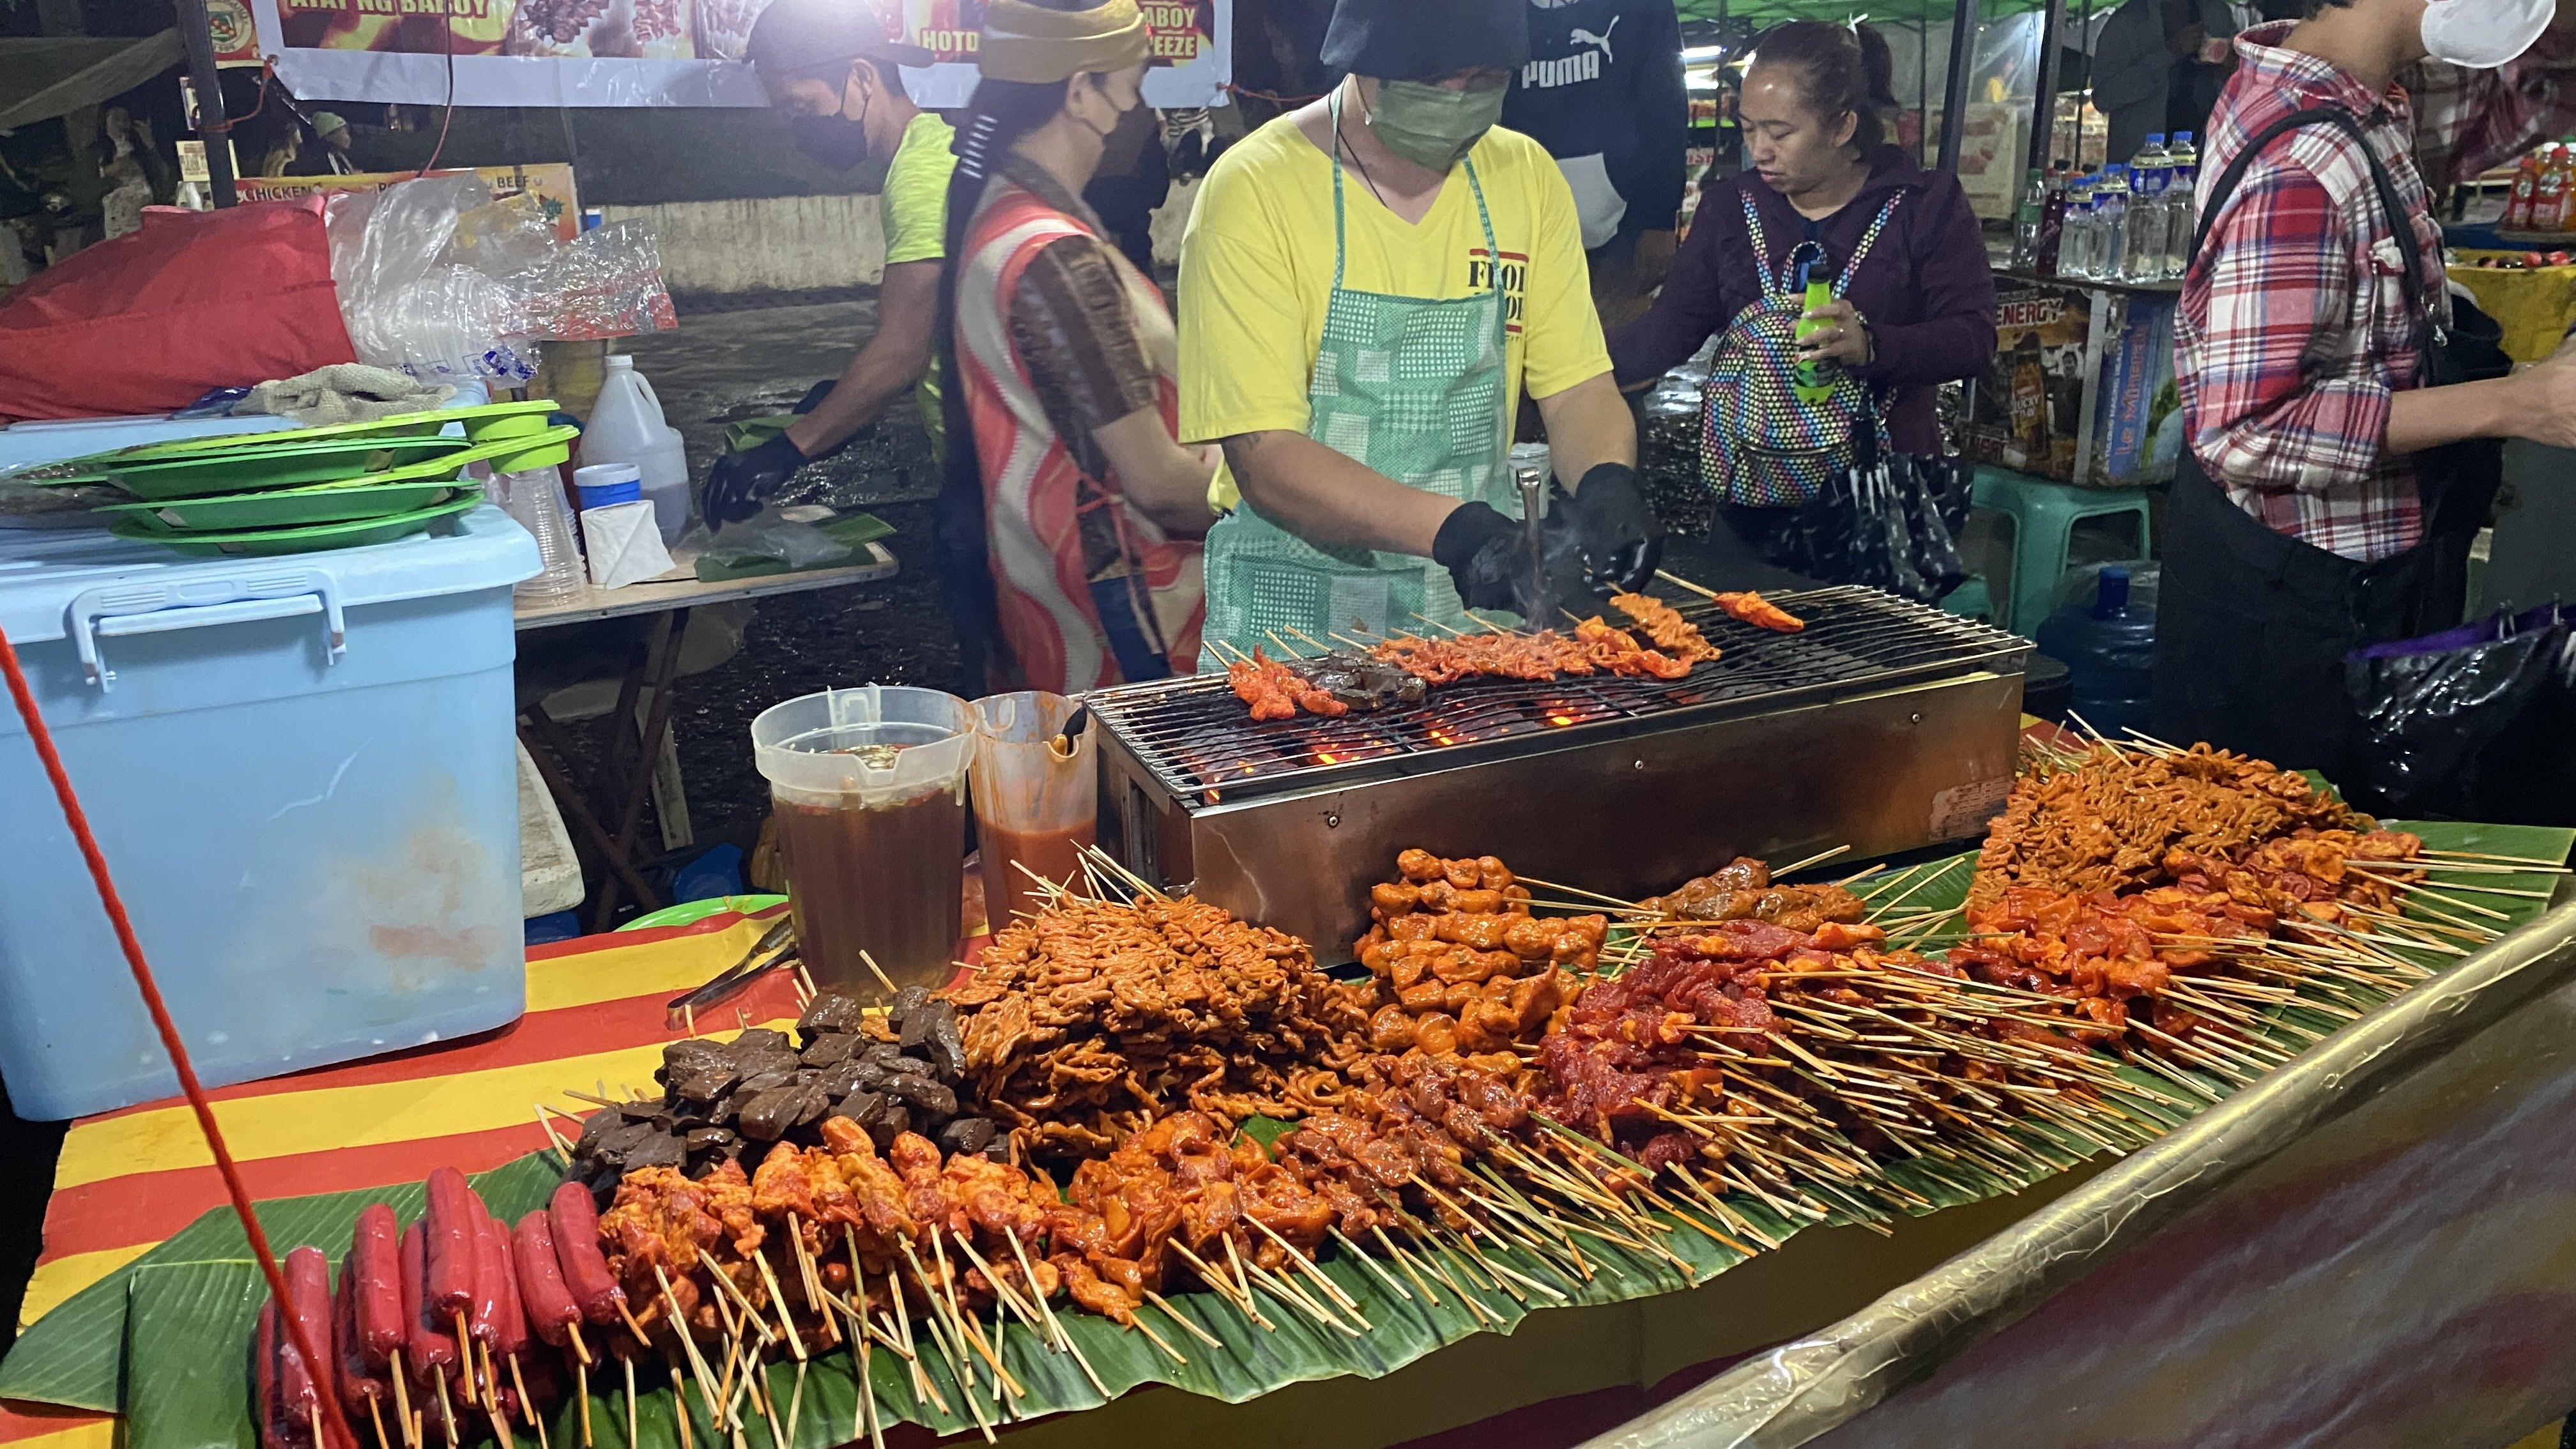 碧瑤夜市 Baguio Night Market攤位小販正在考一串串的烤物